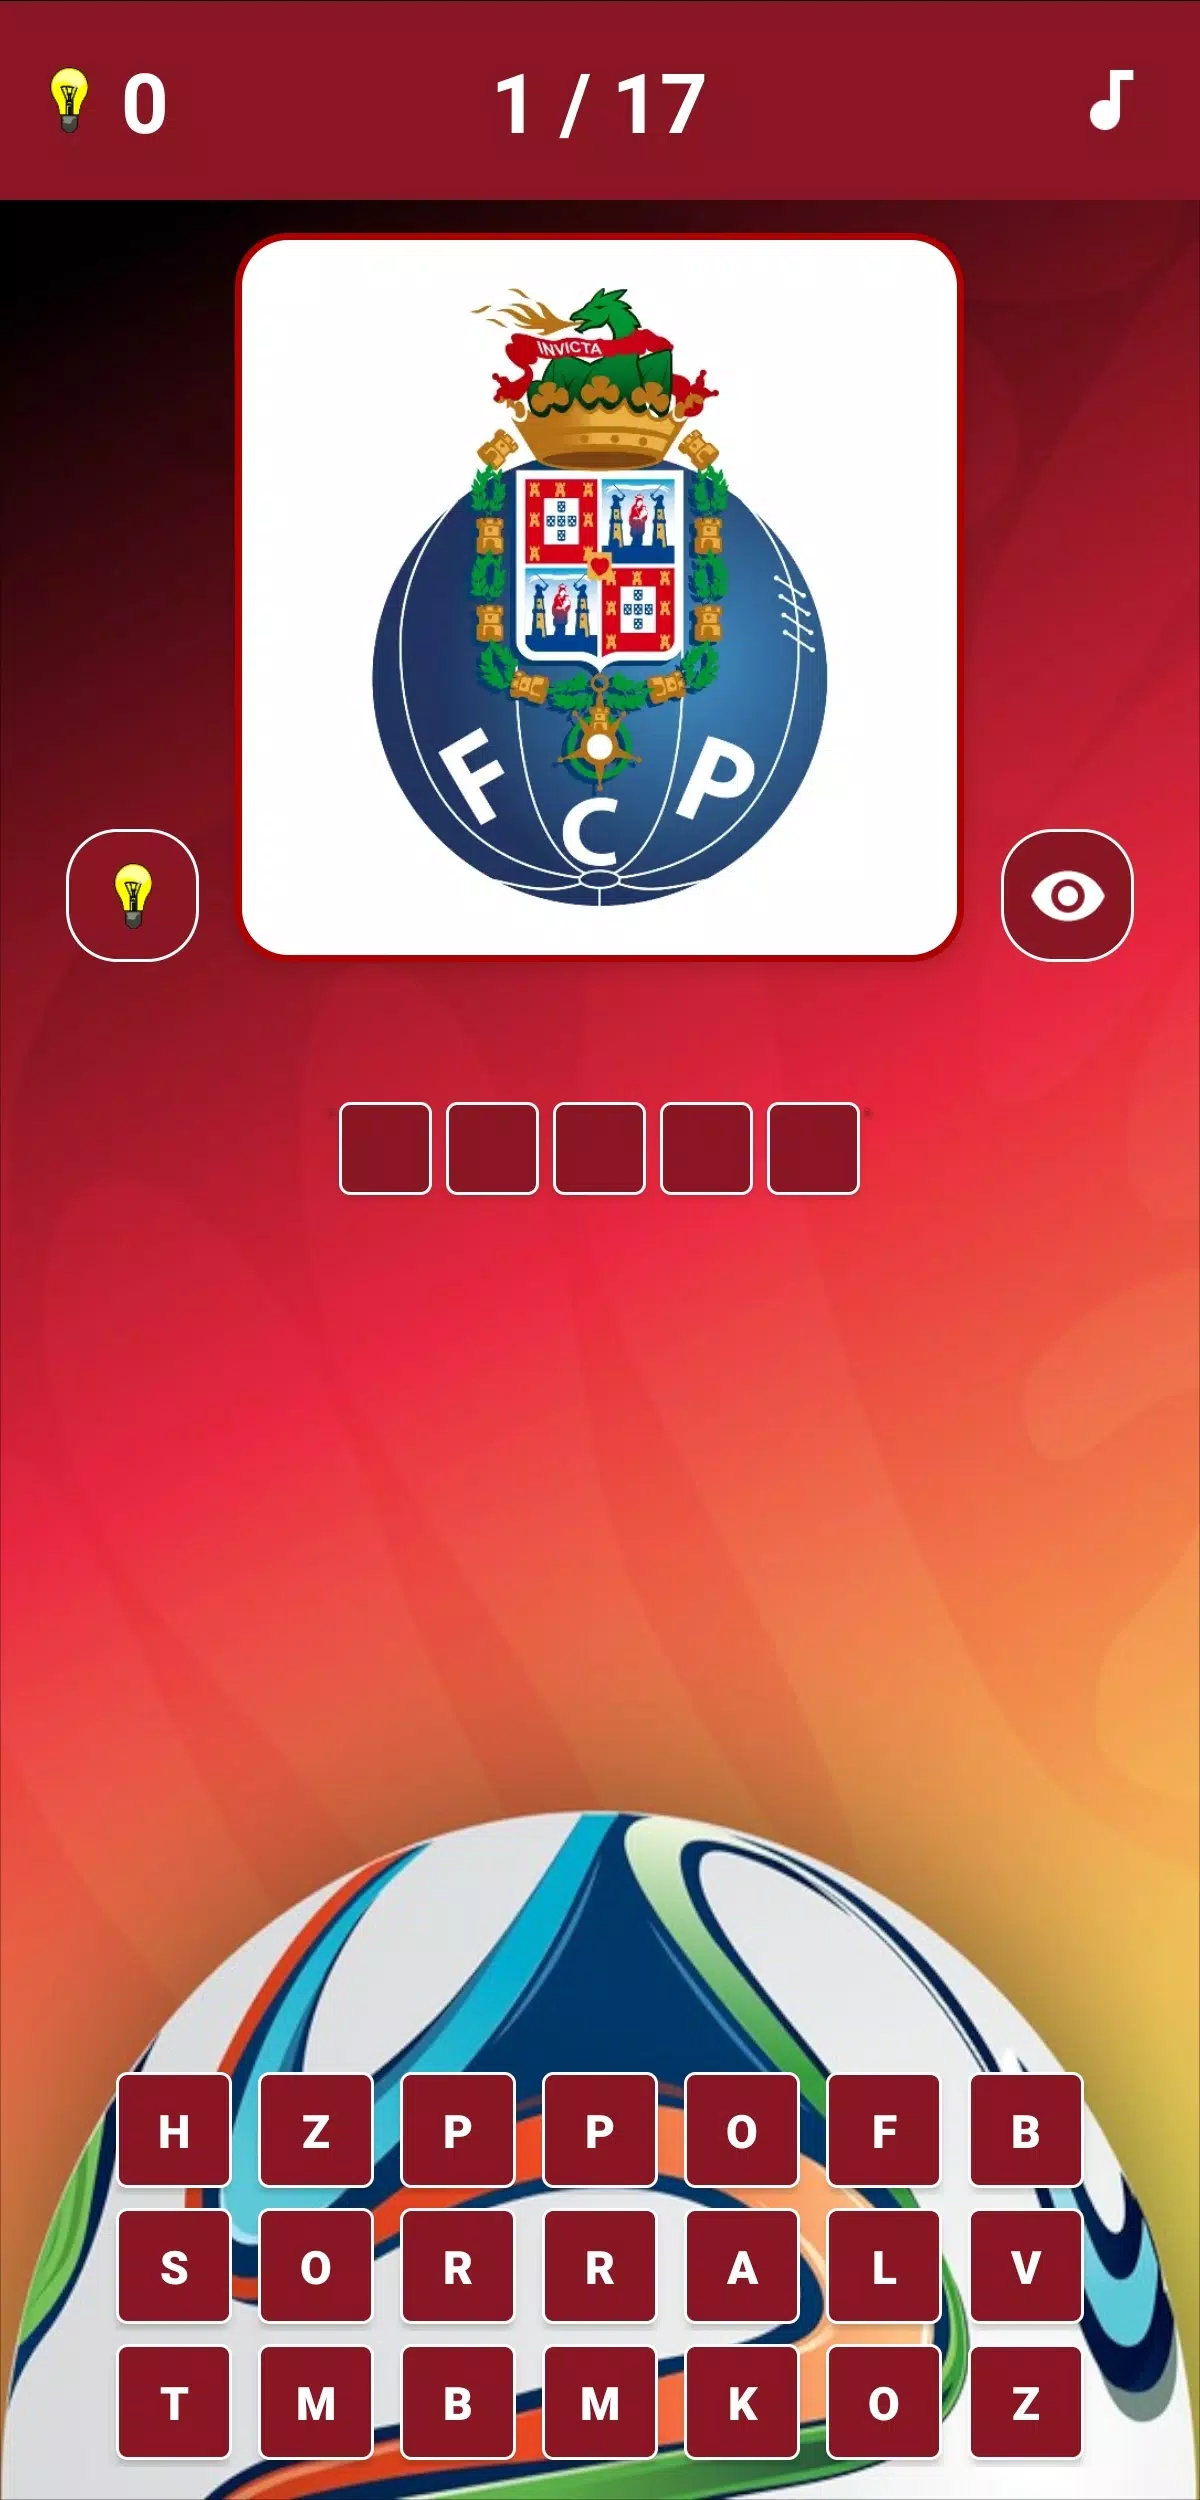 Futebol Quiz Escudos APK + Mod for Android.